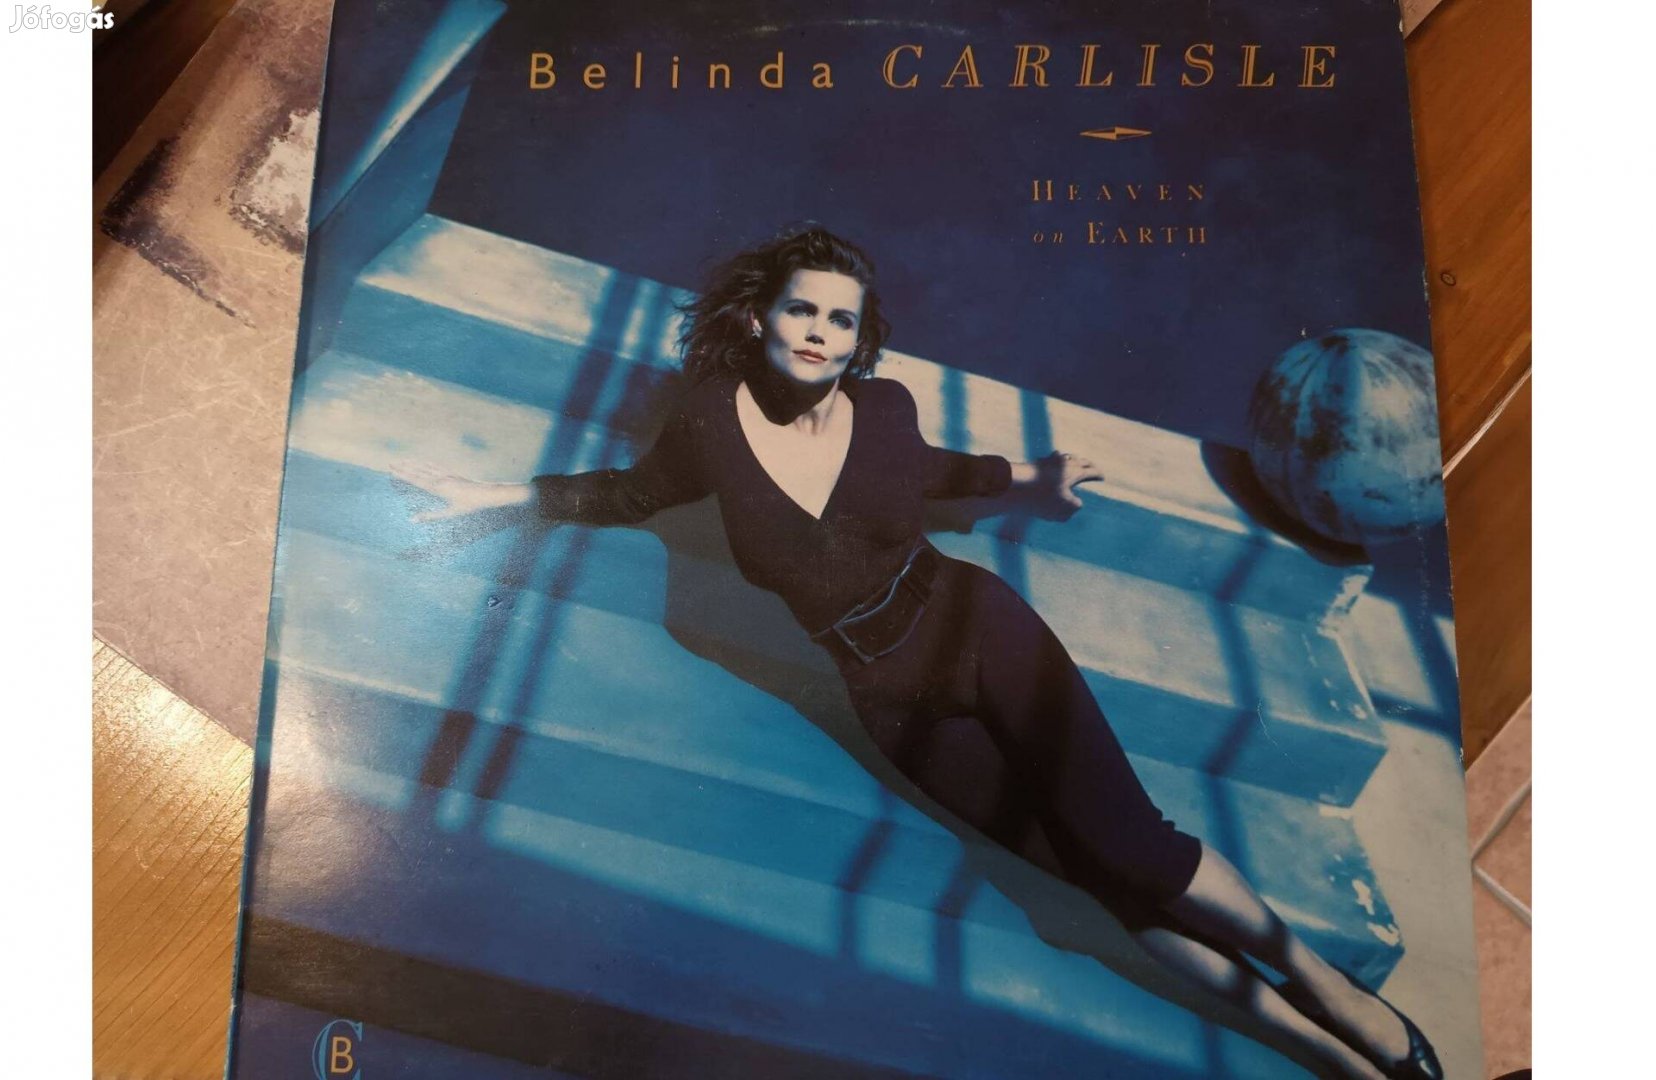 Belinda Carliste bakelit hanglemez eladó